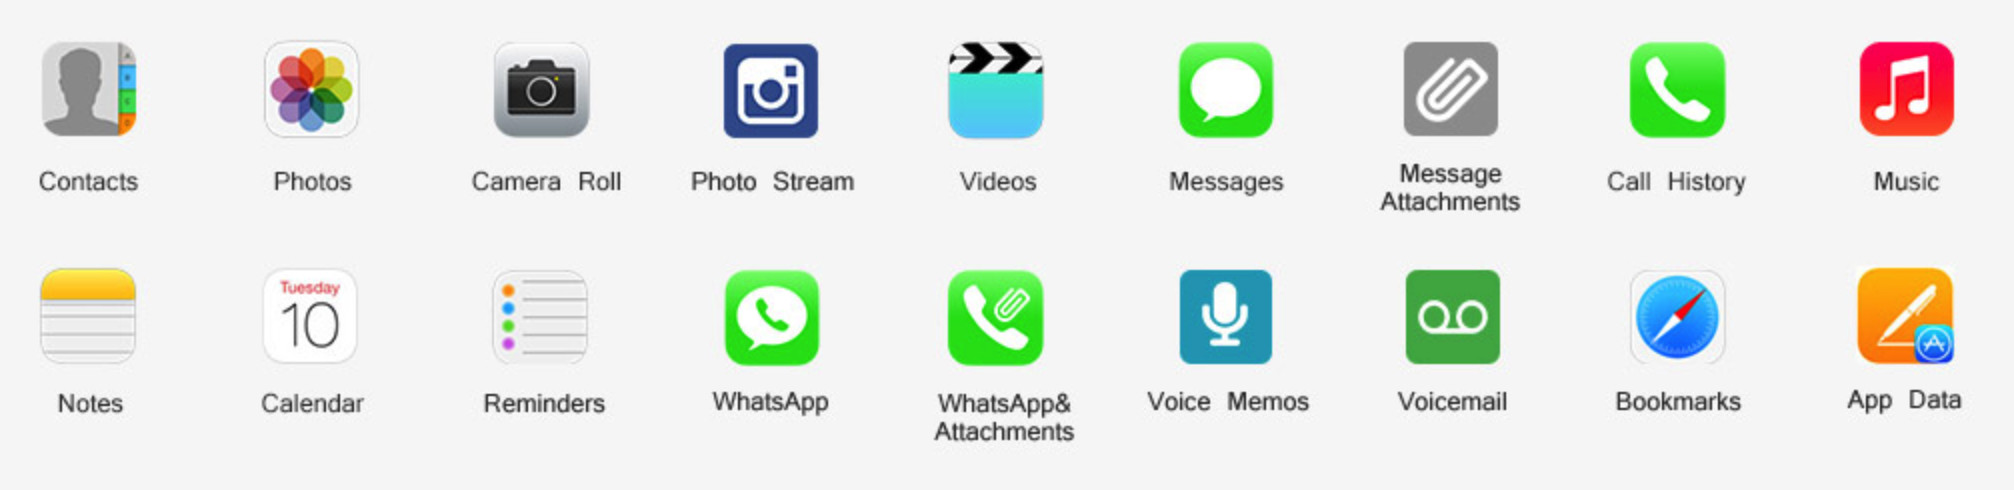 Gihosoft: Ứng dụng khôi phục dữ liệu trên iPhone-3